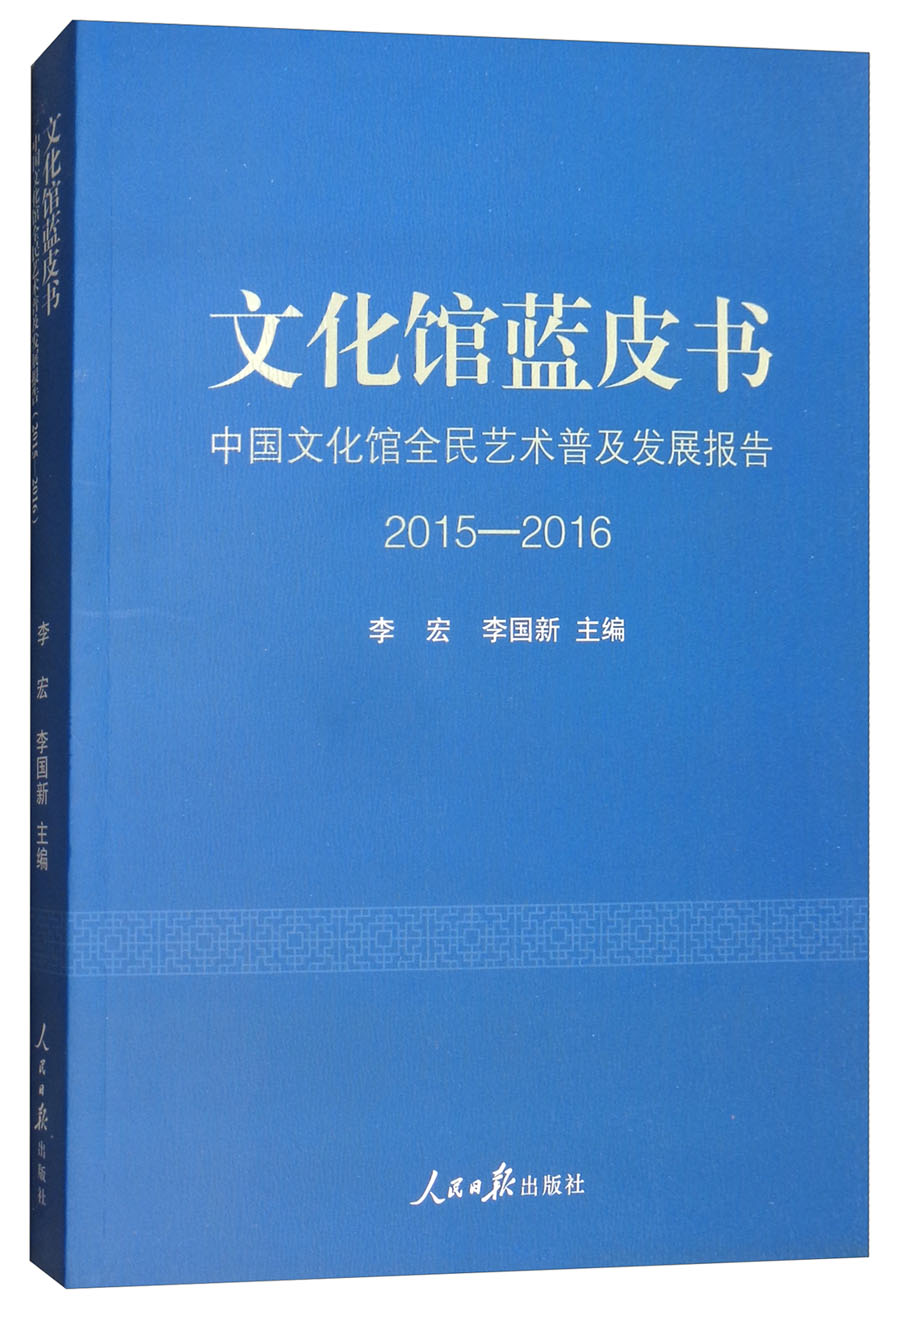 文化馆蓝皮书：中国文化馆全民艺术普及发展报告2015-2016 azw3格式下载